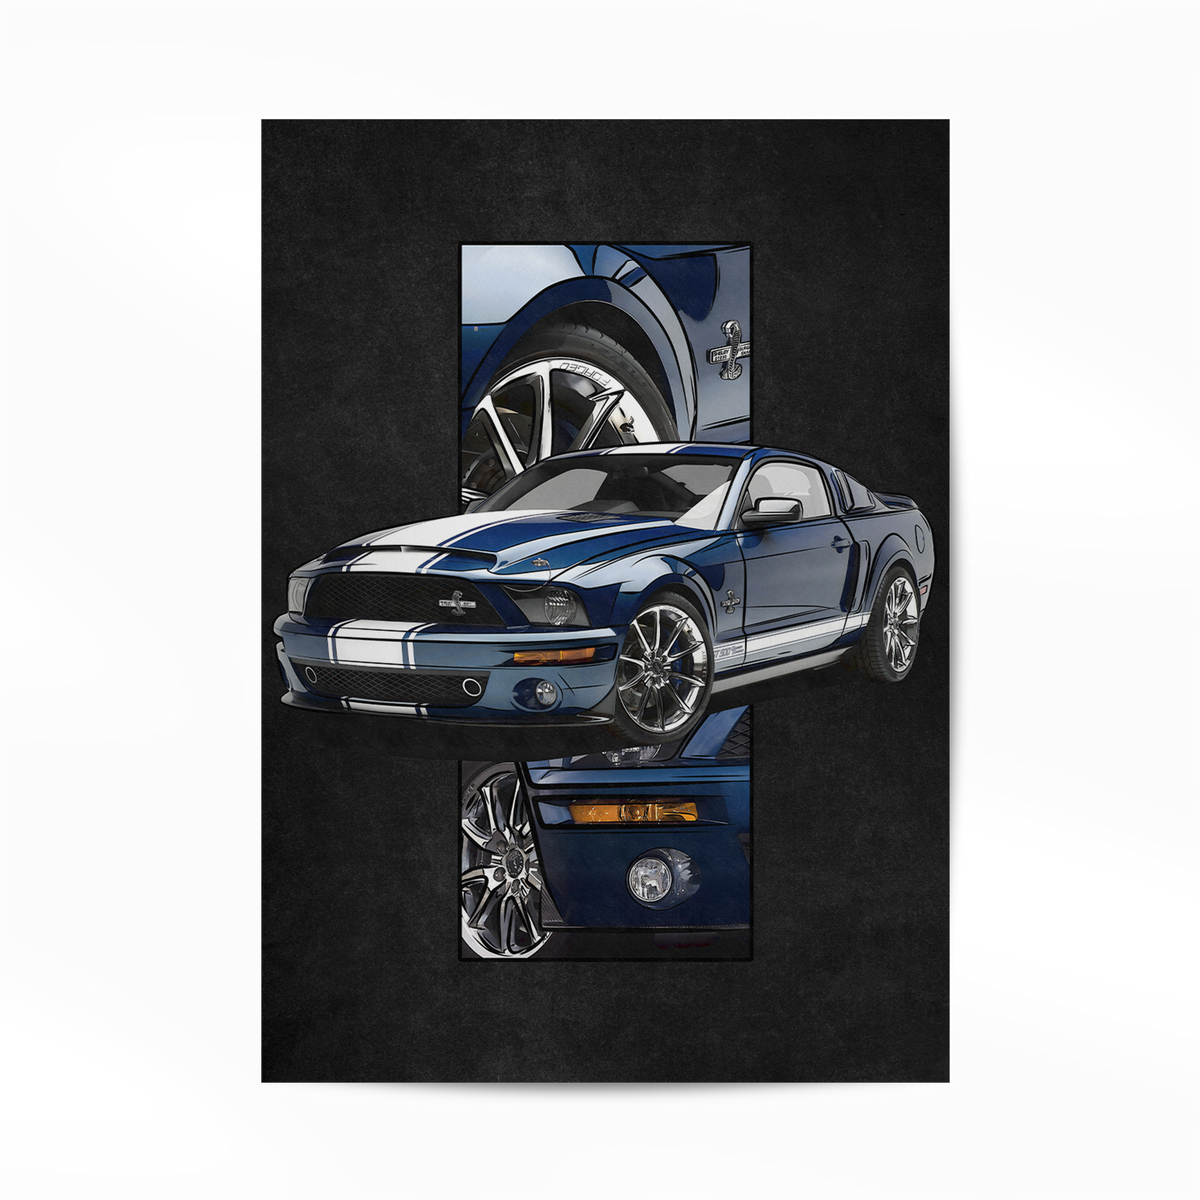 Nome do produto: Mustang GT500